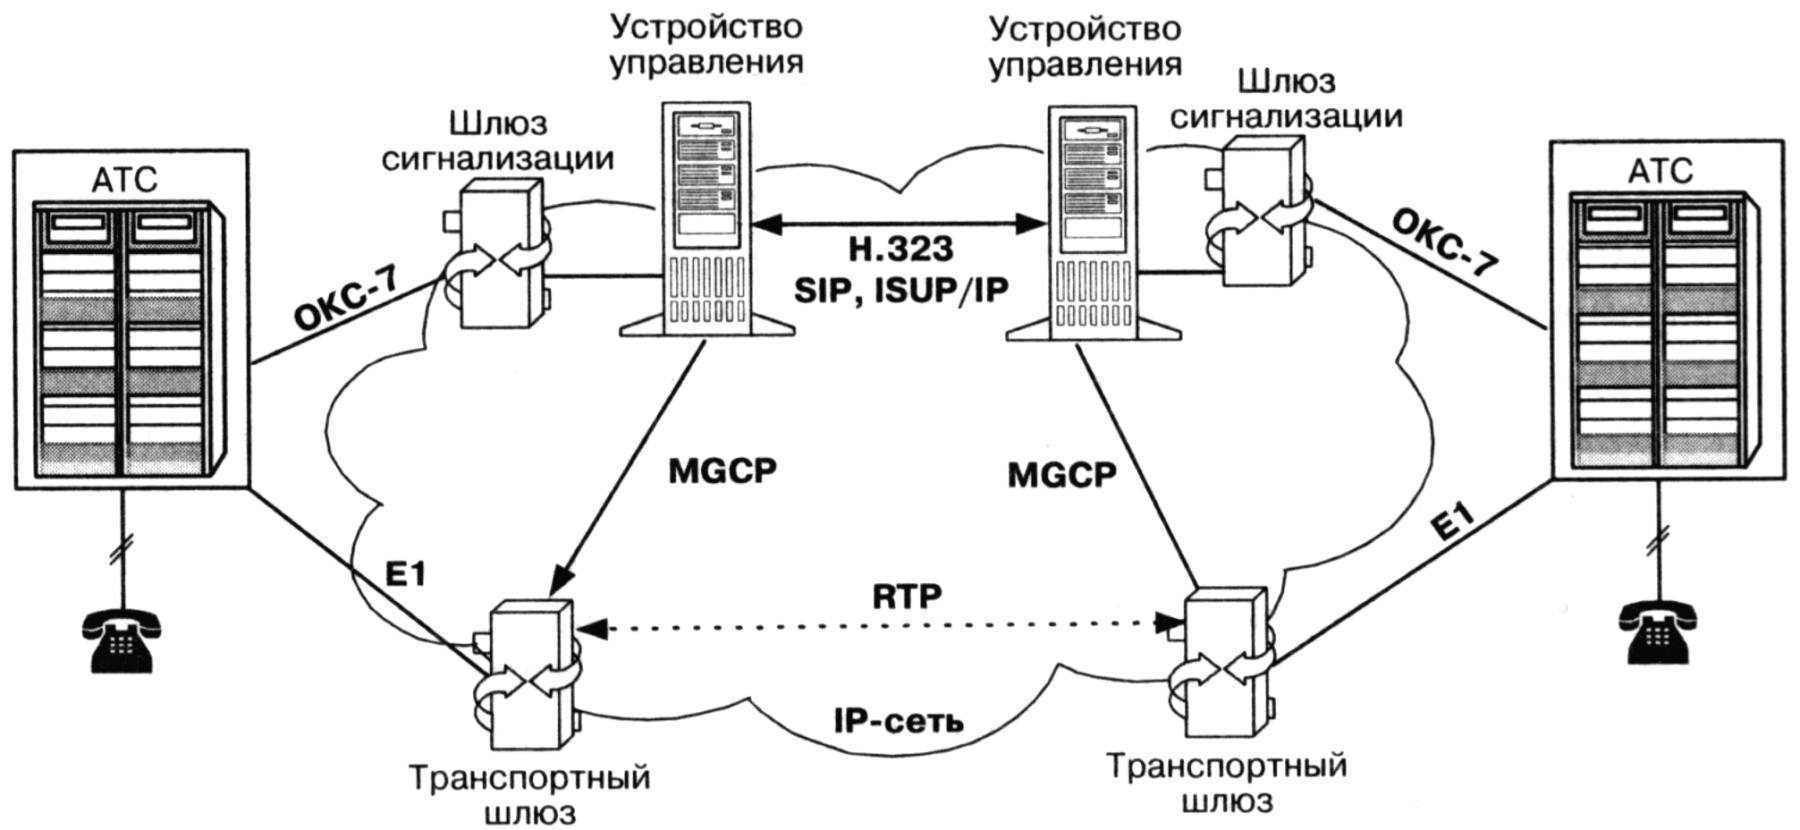 Движения атс. Протокол управления шлюзом Megaco/h.248. Протоколы управления MGCP, H.248. Шлюз IP телефонии схема. Логическая схема организации связи VOIP по протоколу SIP.